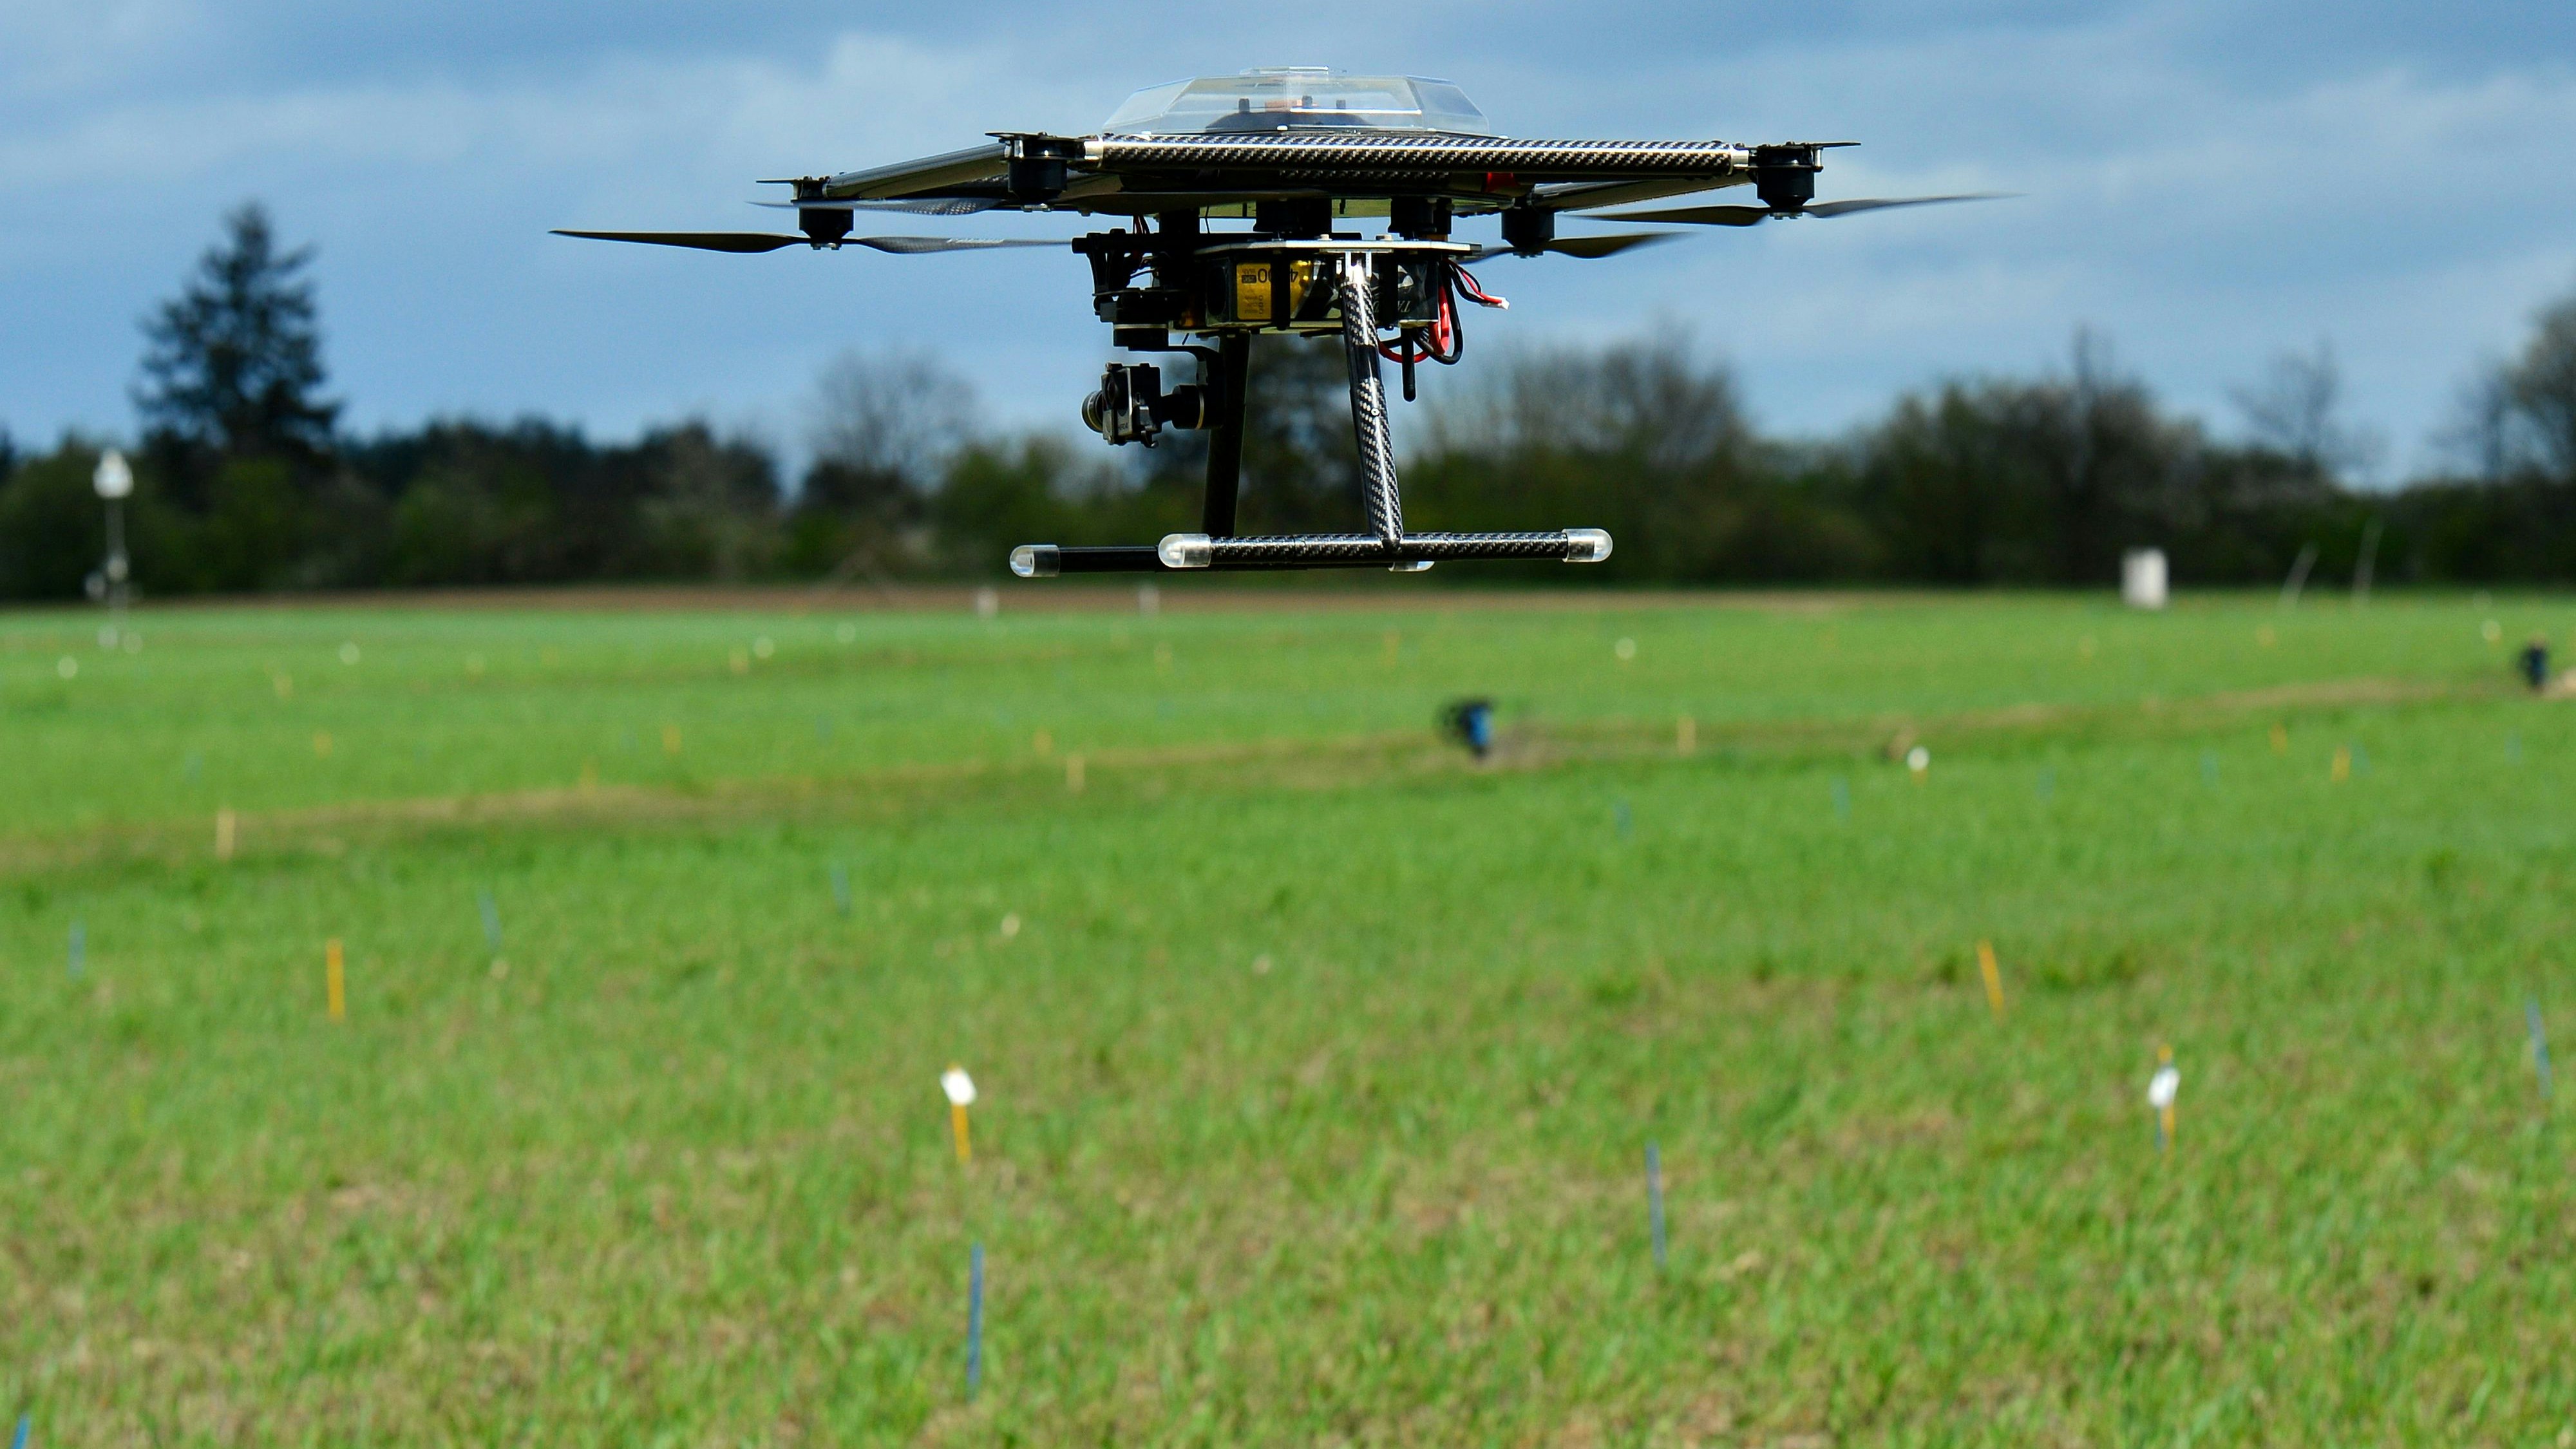 Aufbruch in die Zukunft: Drohnen sind wichtige Hilfsmittel bei der Sammlung von Daten im Pflanzenbau. Symbolfoto: dpa / Gambarini